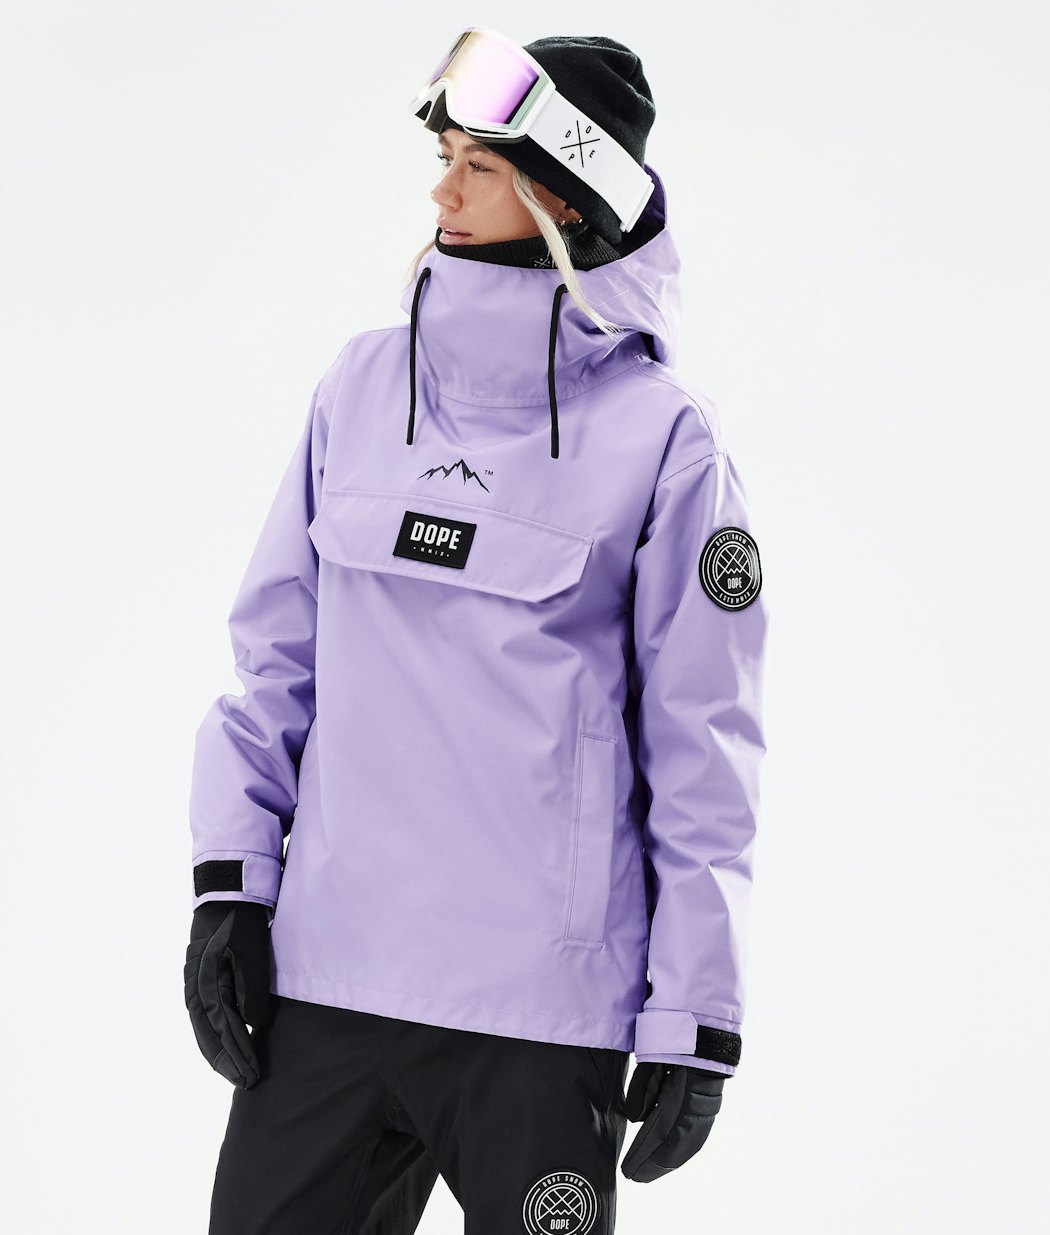 Dope Blizzard PO W Women's Snowboard Jacket Faded Violet